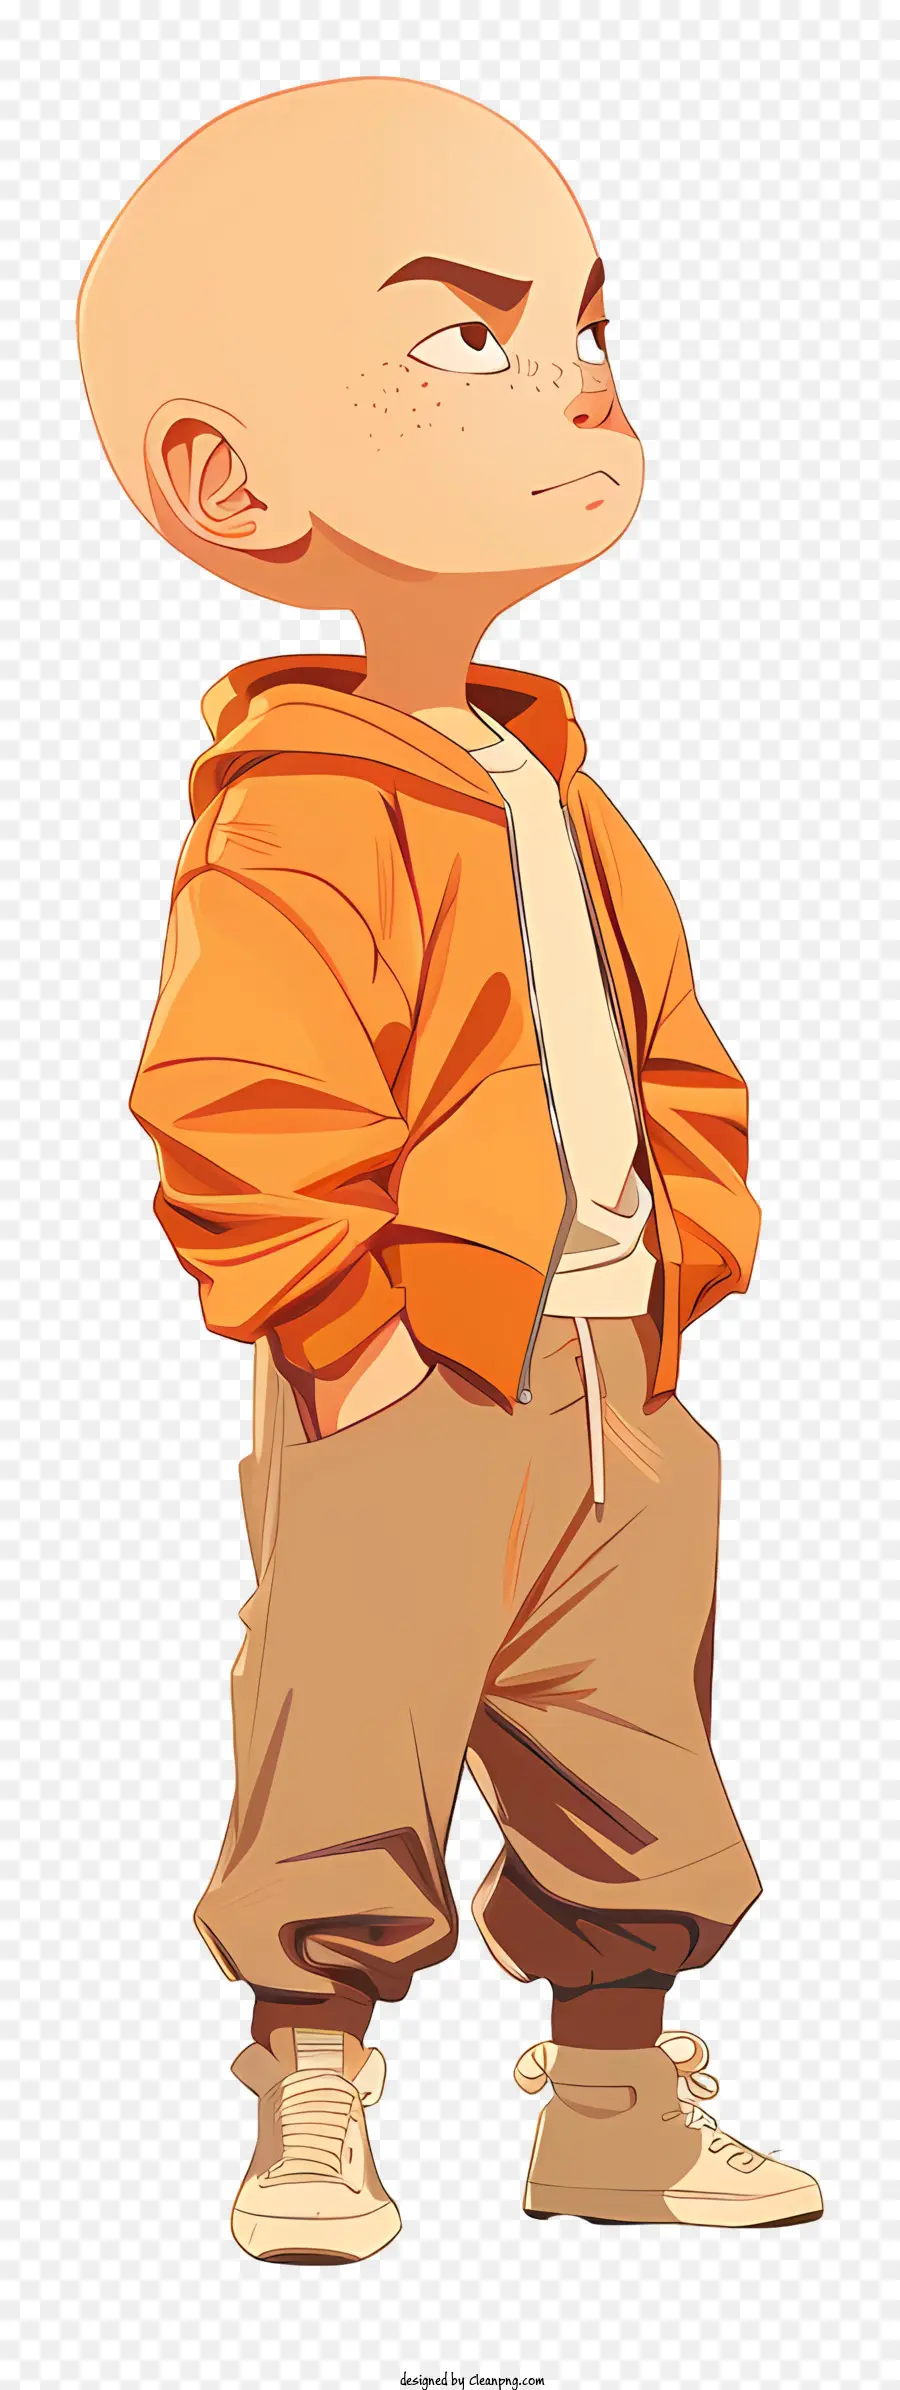 Krillin Bald Man Orange Giacca pantaloni marroni Espressione seria - Uomo calvo in giacca arancione, espressione seria